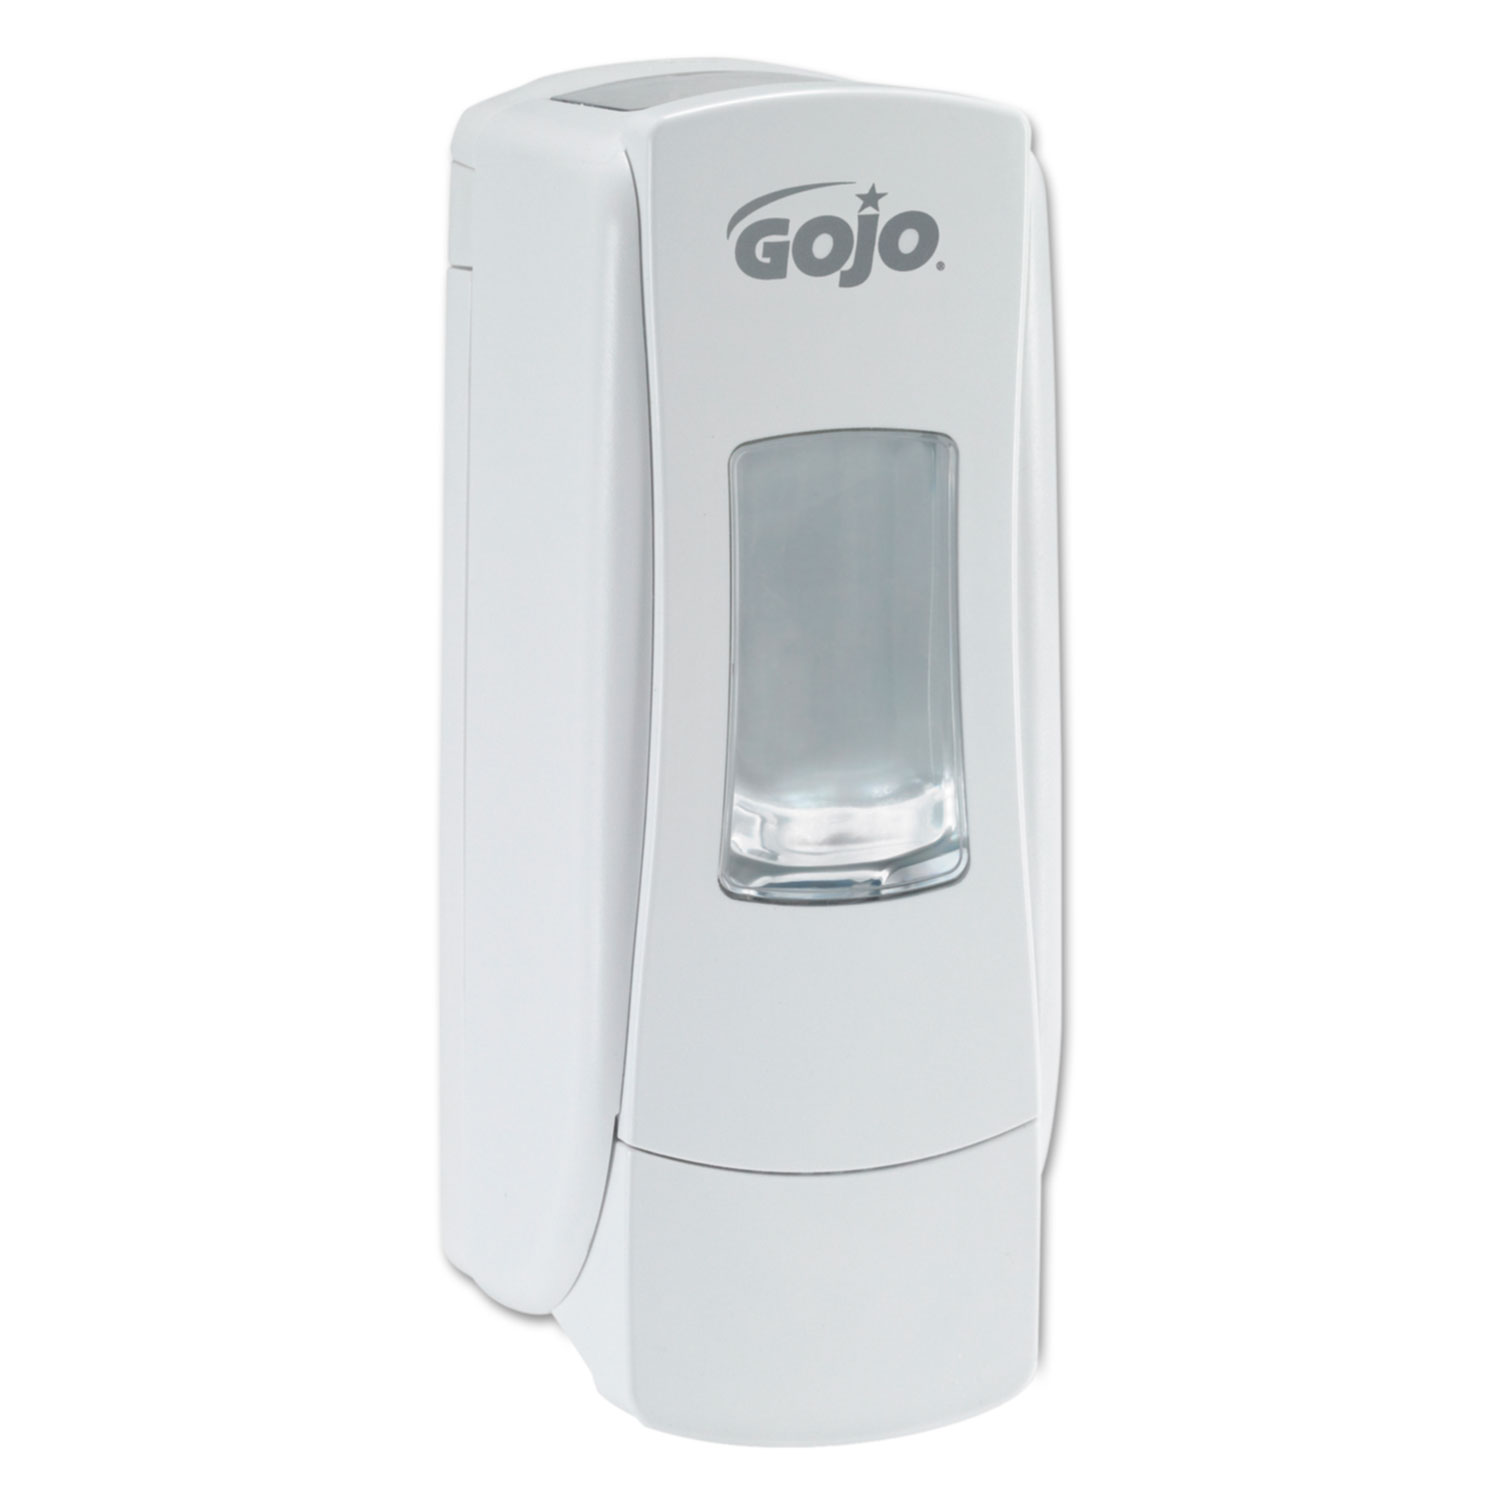  GOJO 8780-06 ADX-7 Dispenser, 700 mL, 3.7 x 3.5 x 9.7, White (GOJ878006) 